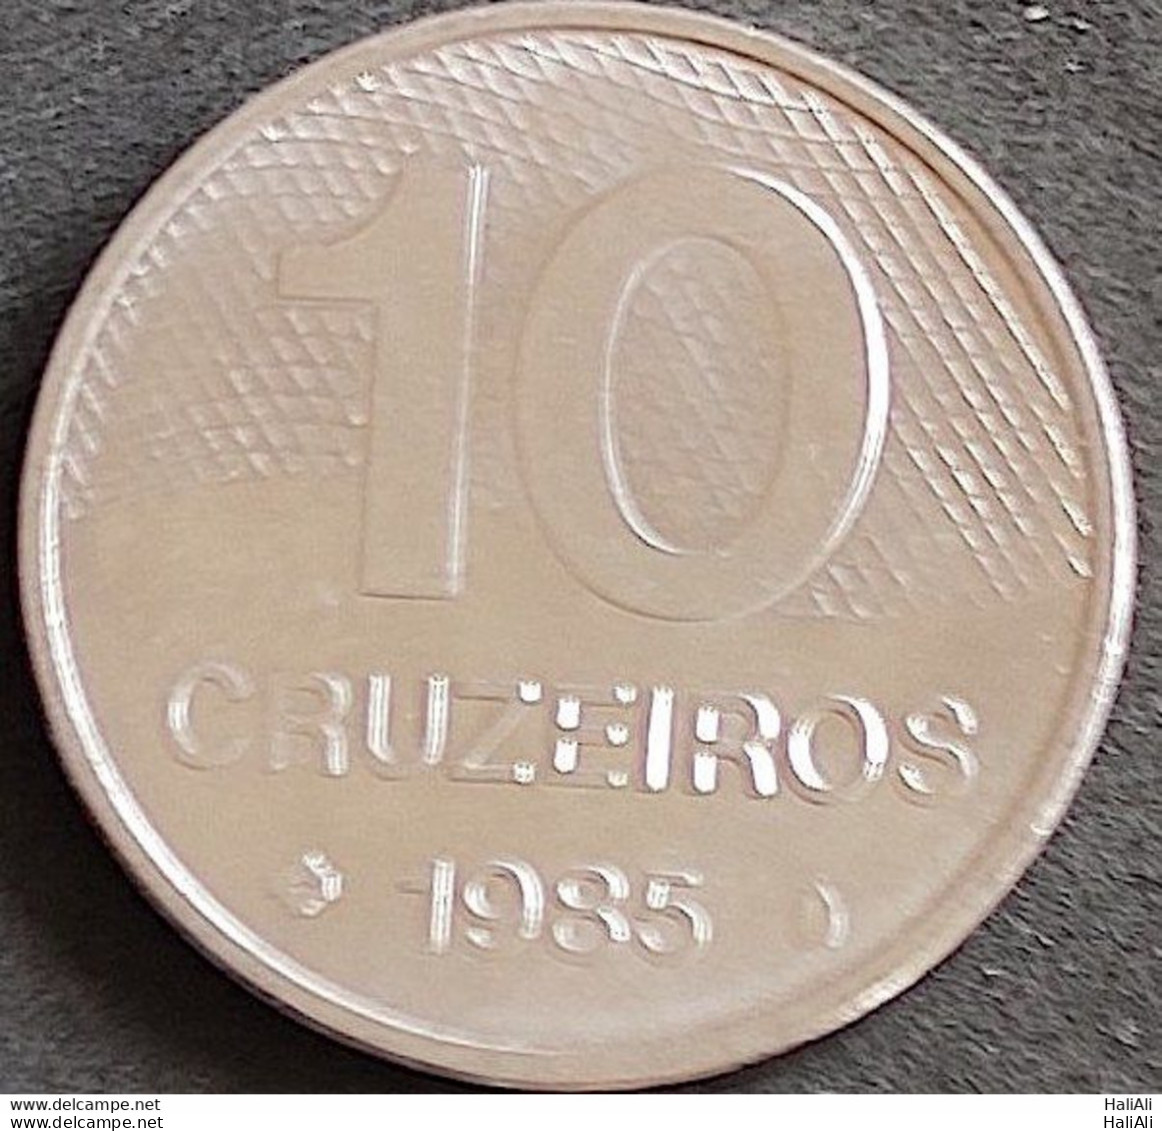 Coin Brazil Moeda Brasil 1985 10 Cruzeiros 1 - Brasilien